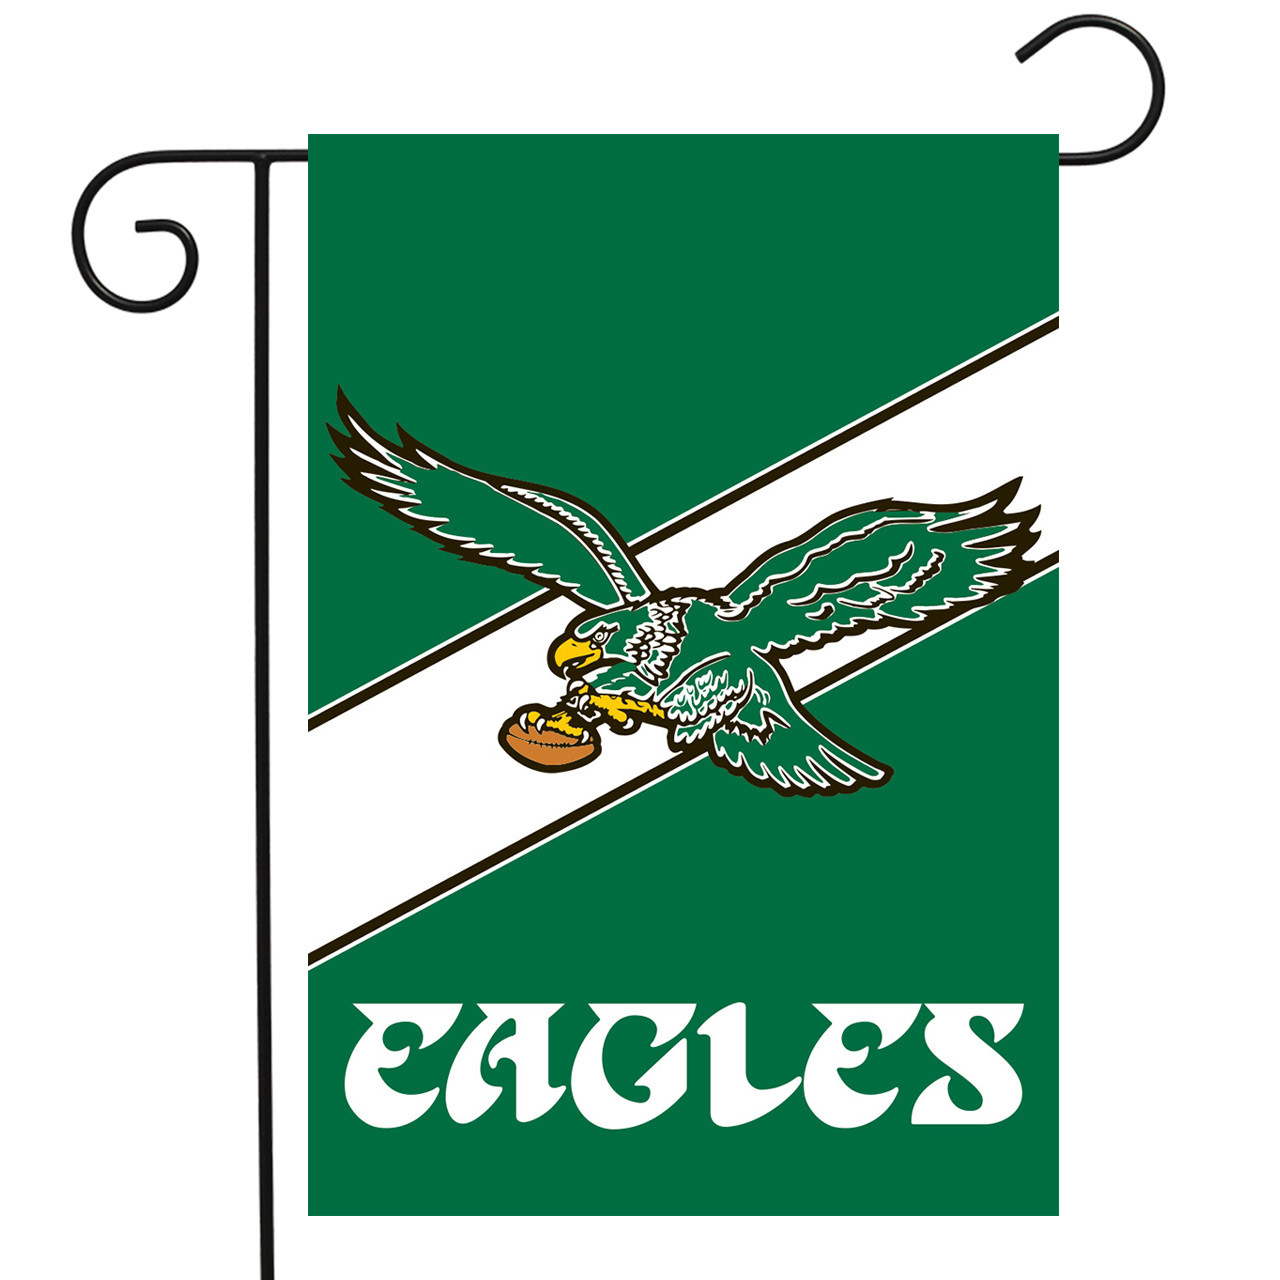 Philadelphia Eagles wallpaper for 2021 : r/eagles